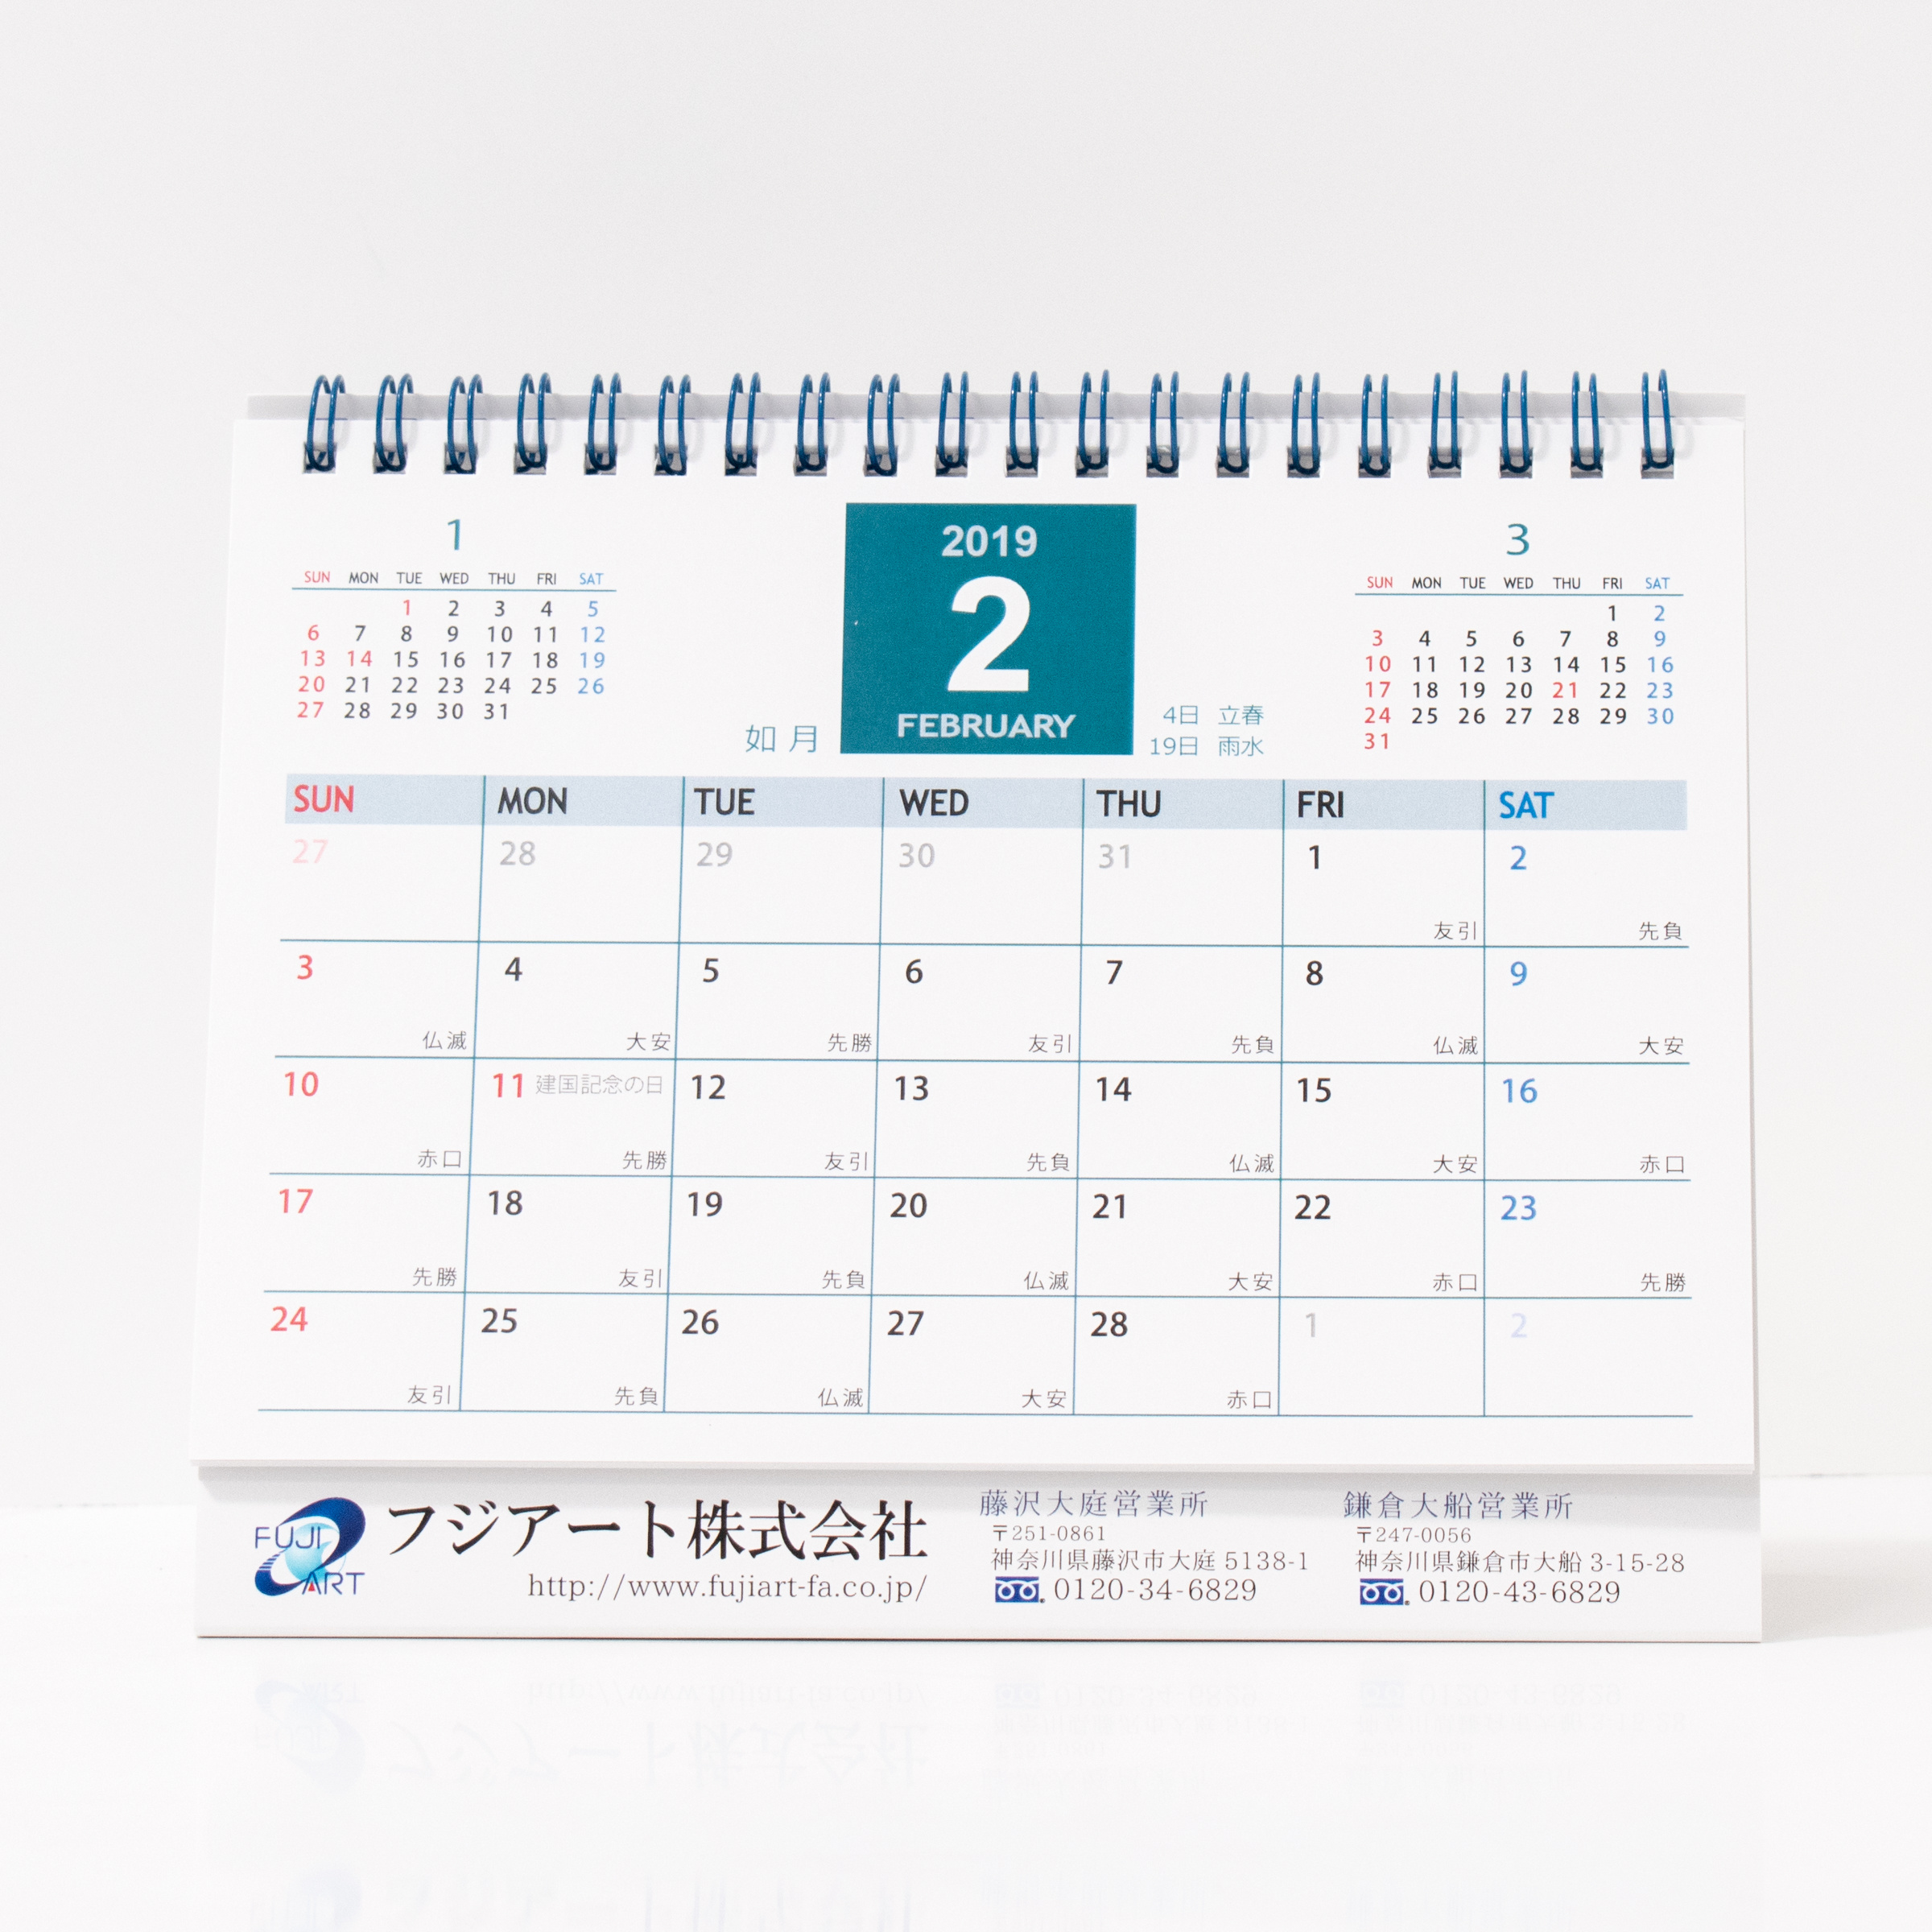 「フジアート株式会社 様」製作のオリジナルカレンダー ギャラリー写真1